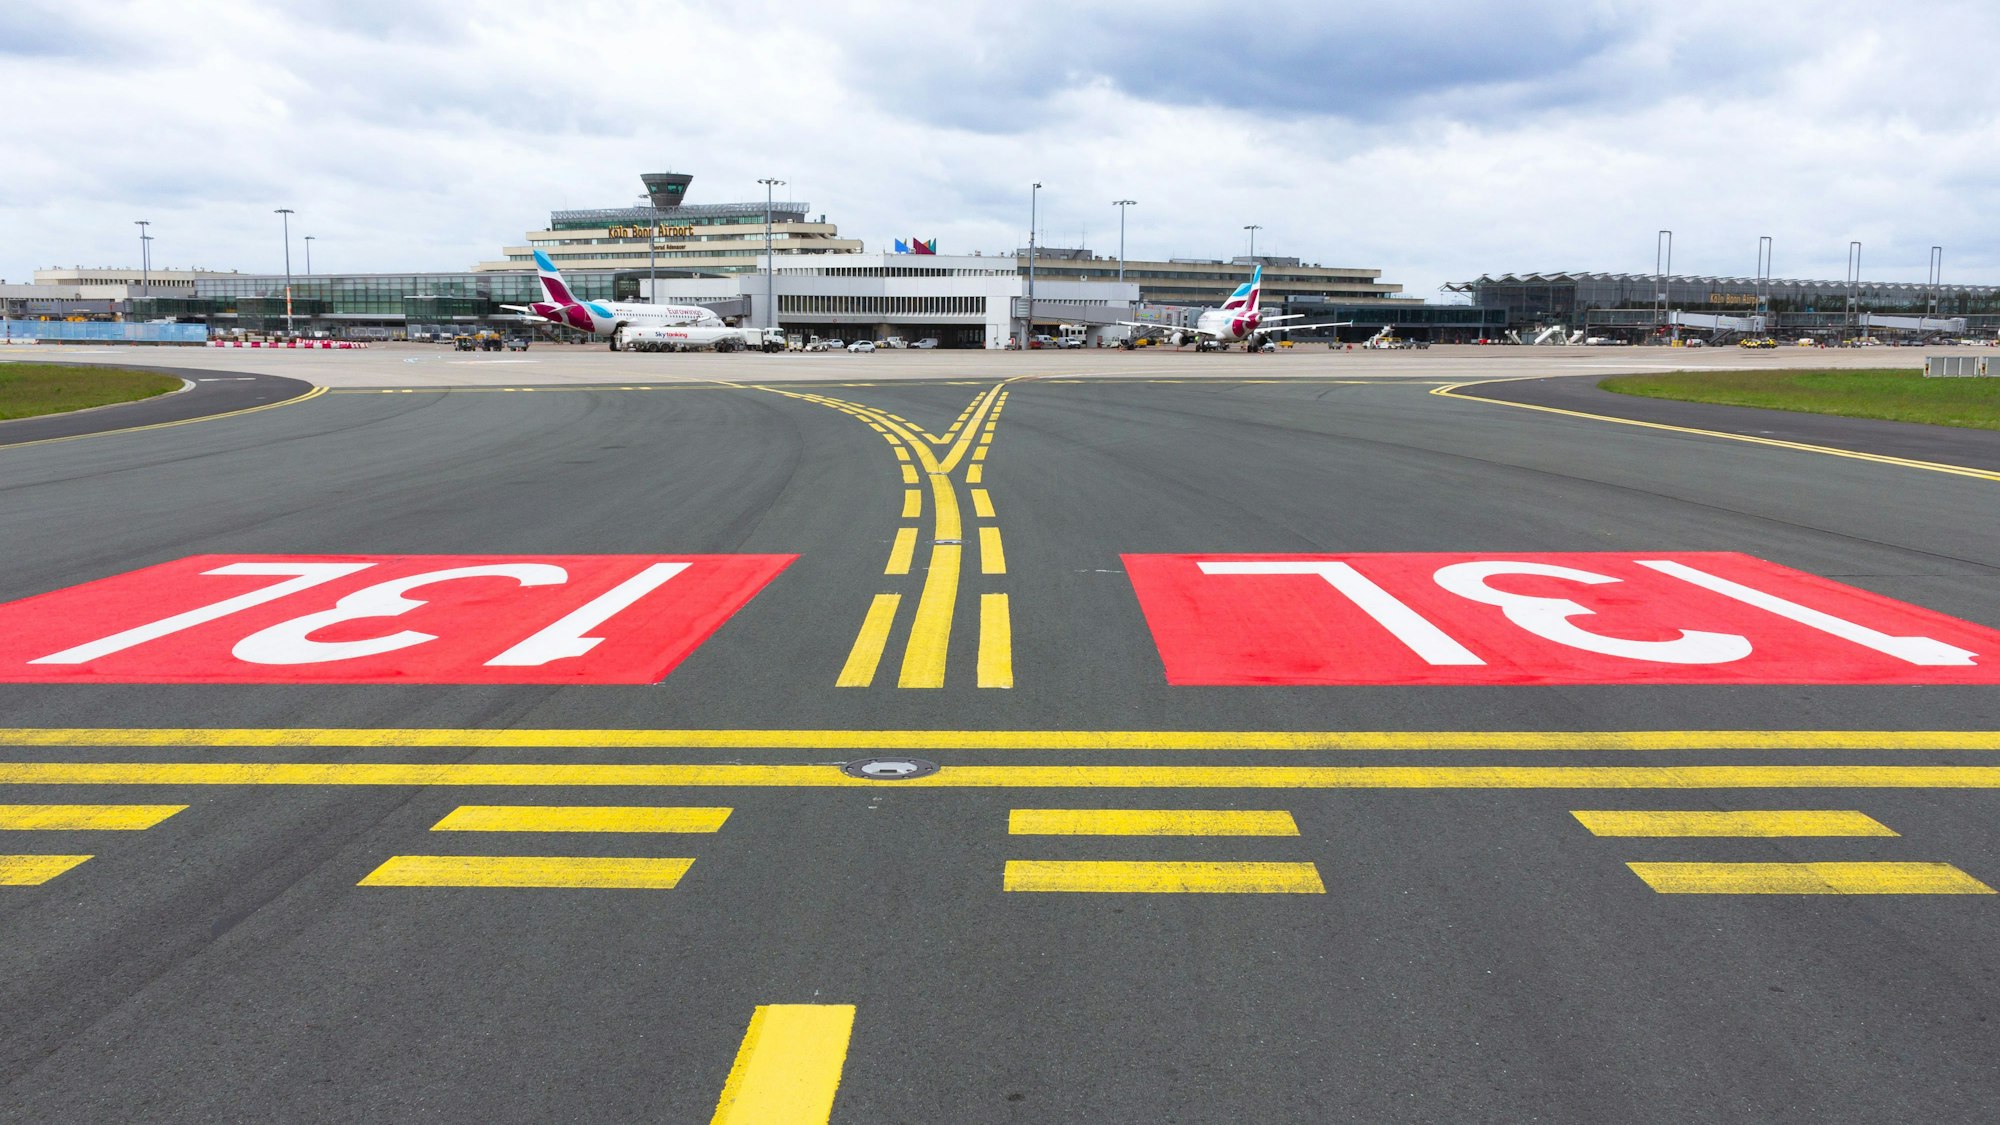 Zwei der drei Start- und Landebahnen am Flughafen Köln/Bonn bekommen einen neuen Namen. Sie sind groß auf dem Asphalt zu erkennen.